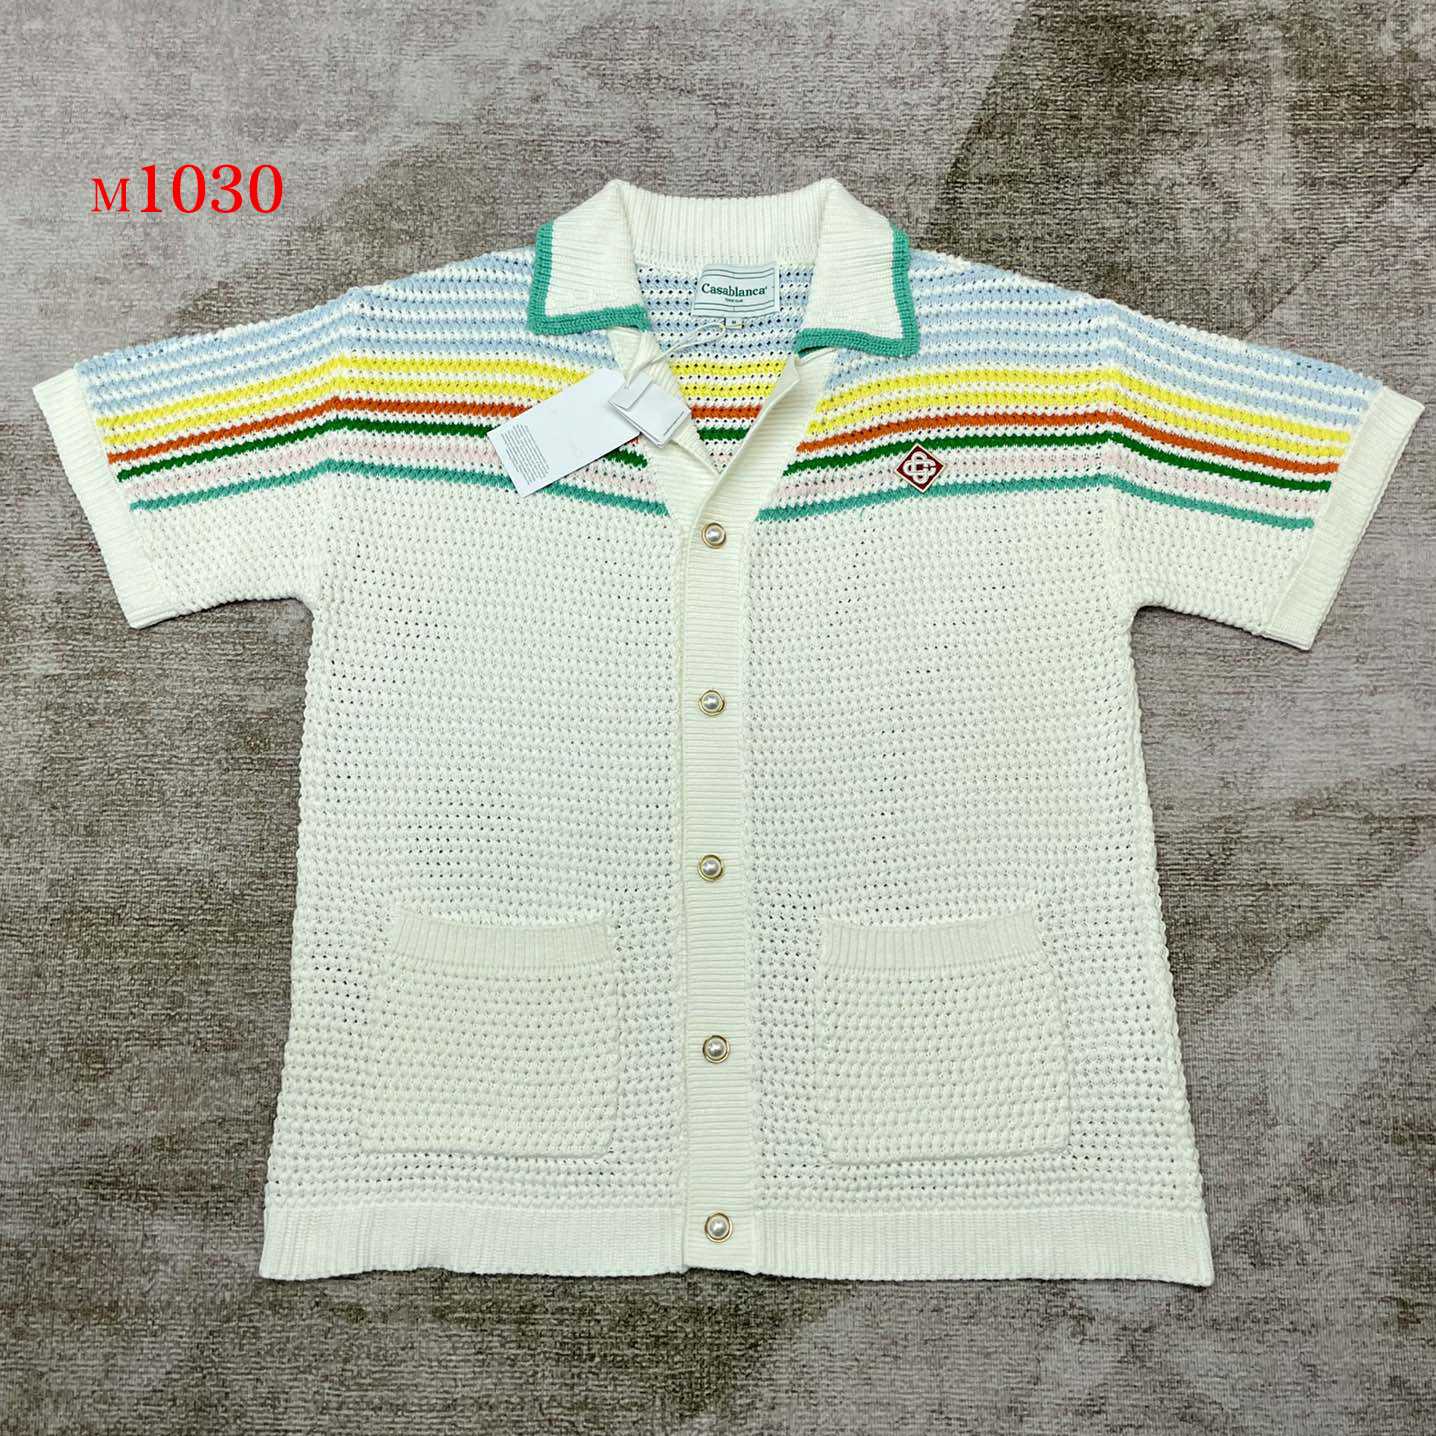 Casablanca Knitted Polo Shirt      m1030 - DesignerGu